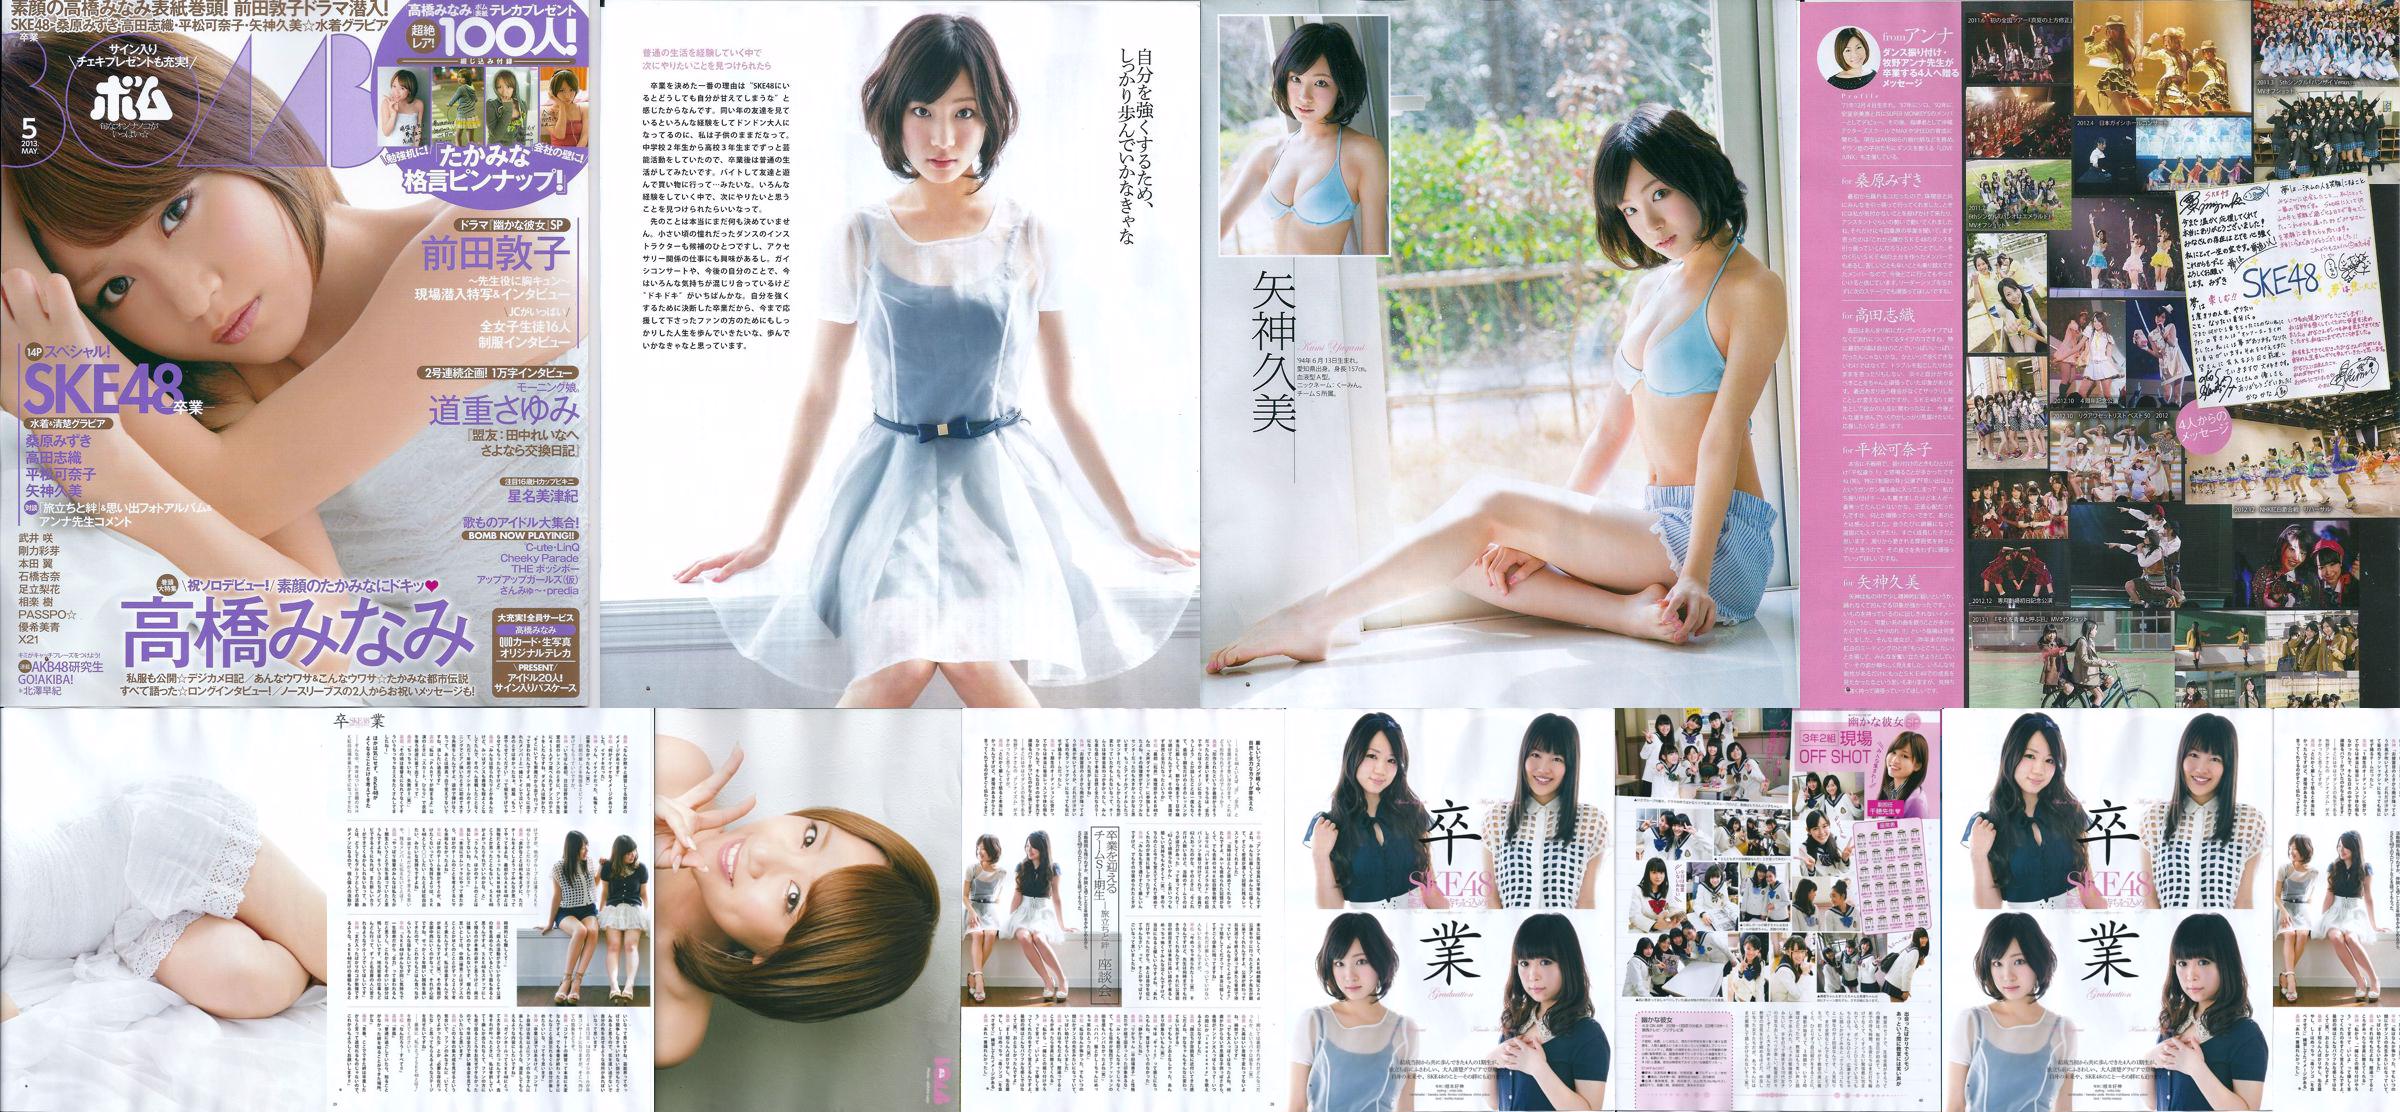 [Bomb Magazine] 2013 No.05 Kumi Yagami Minami Takahashi Atsuko Maeda Foto No.148a4d Seite 1